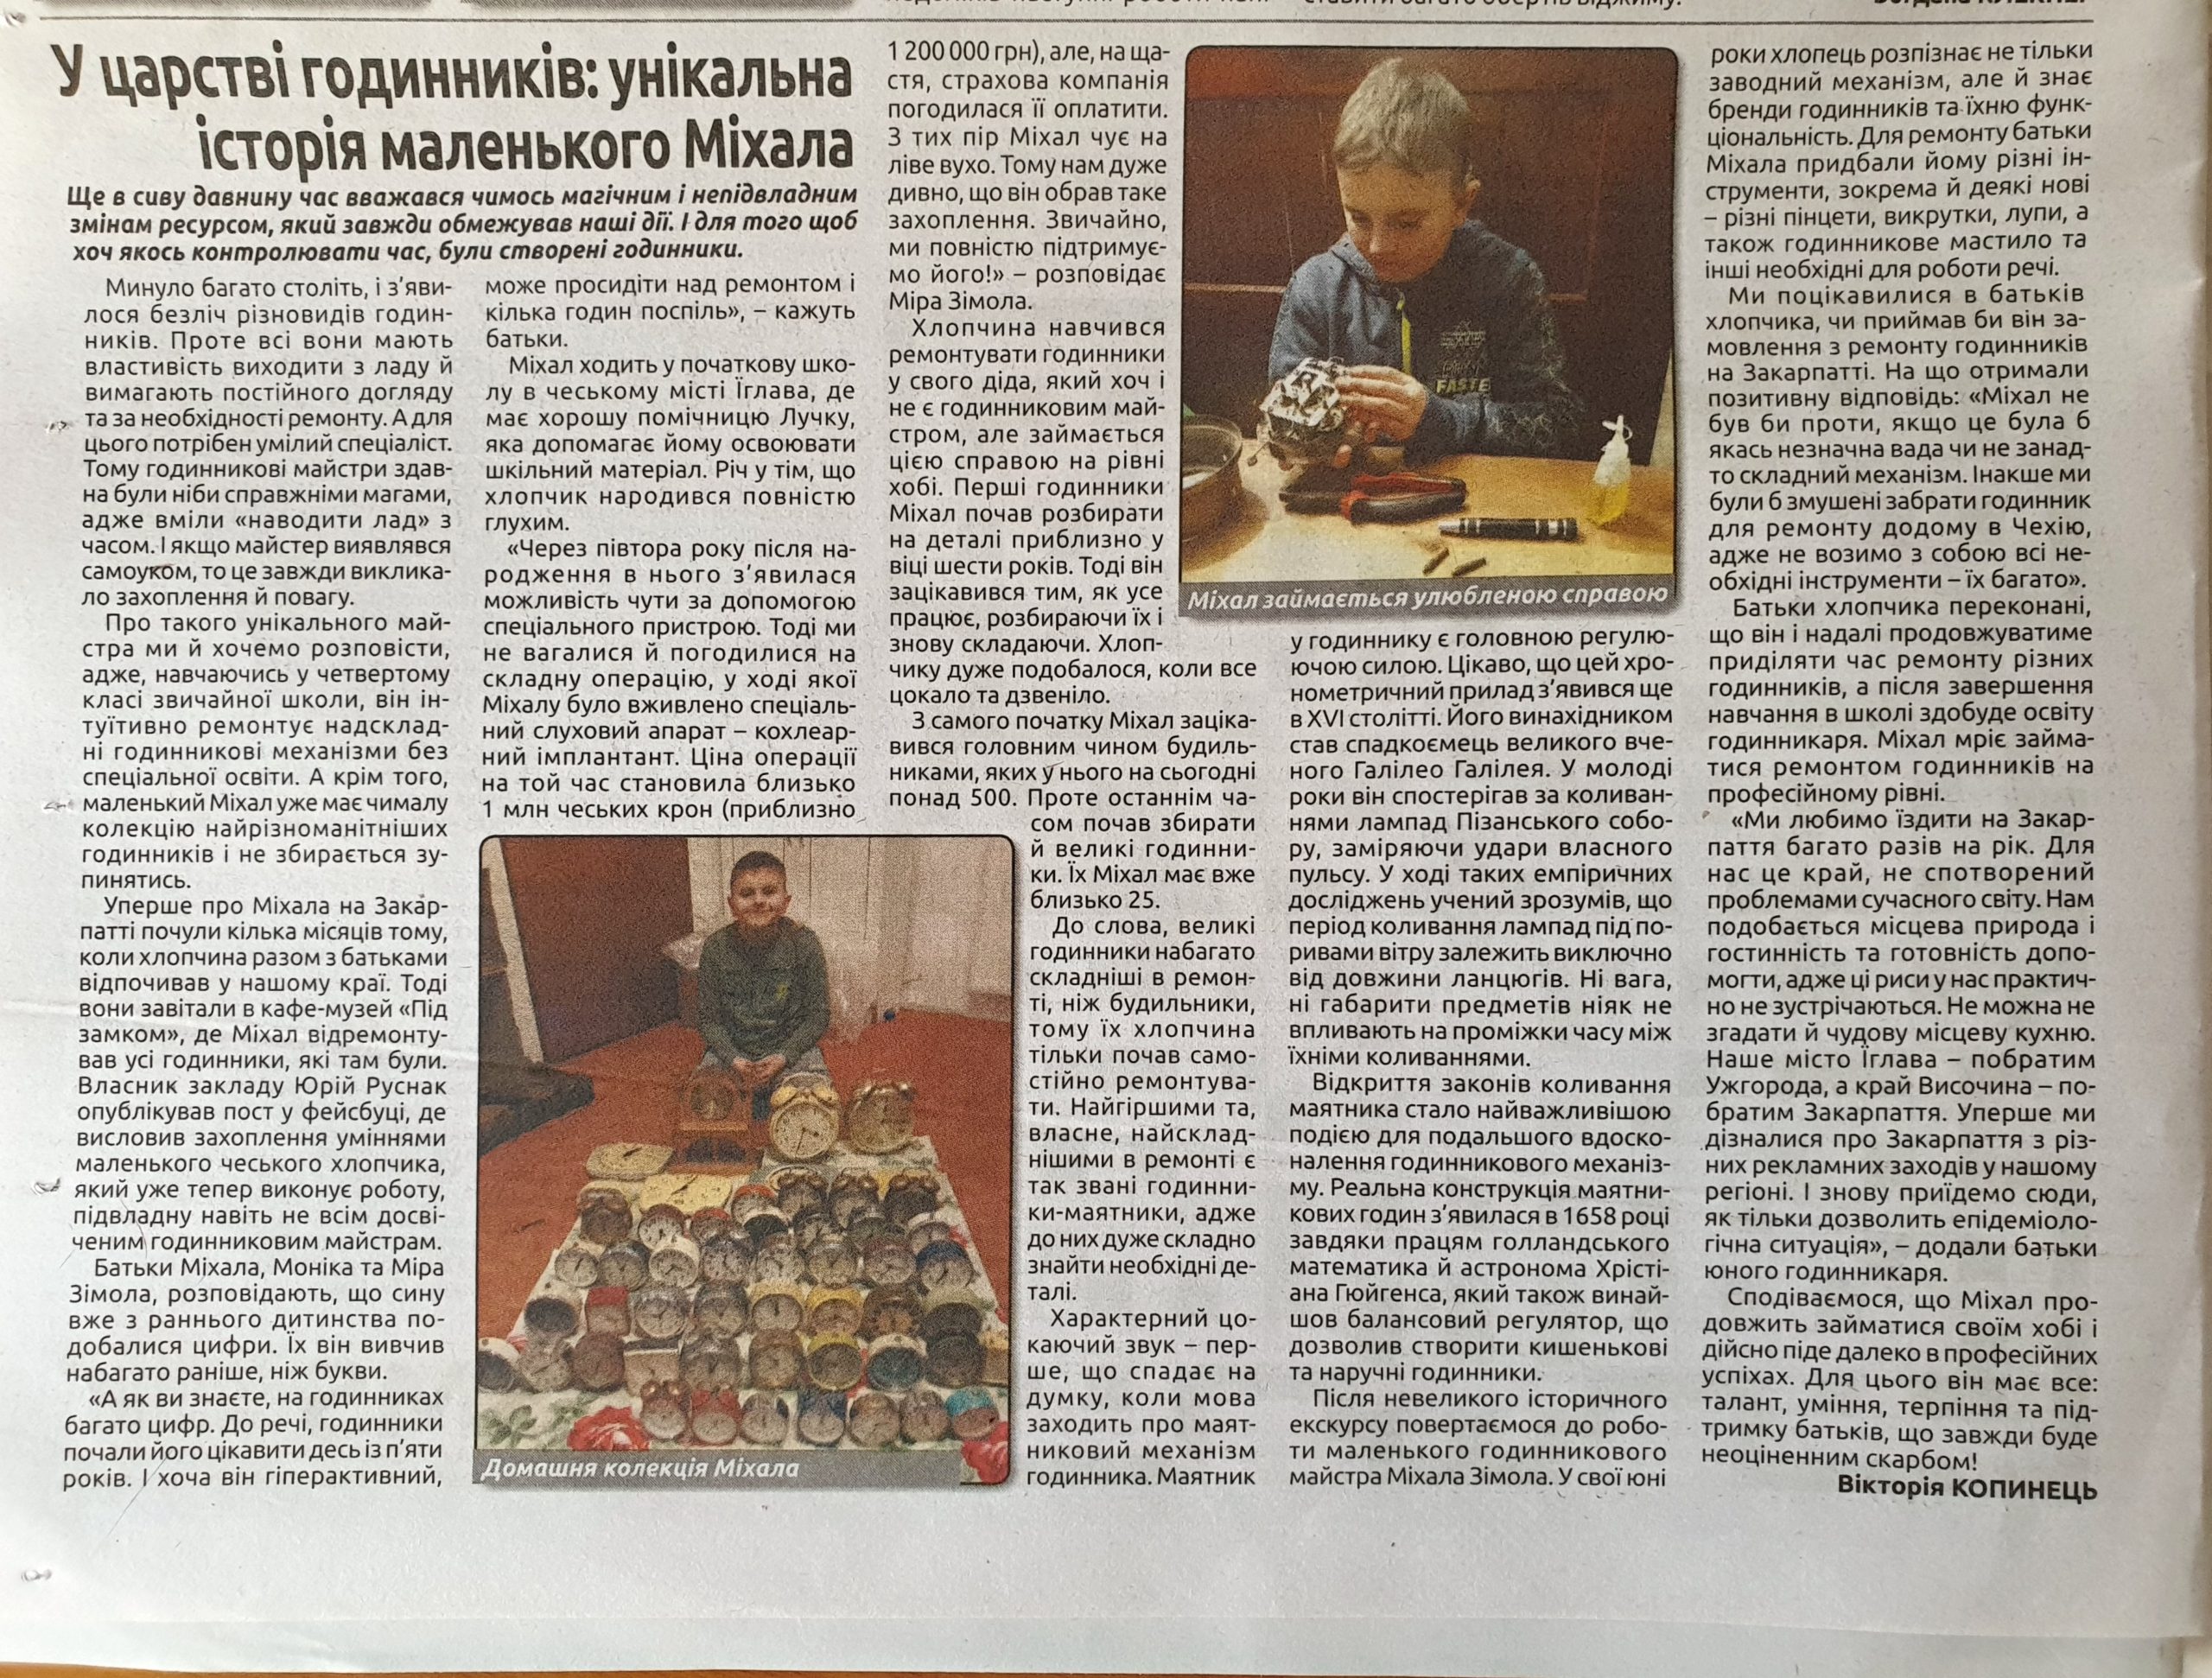 Článek o hodináři Michalovi v novinách Karpatský objektiv